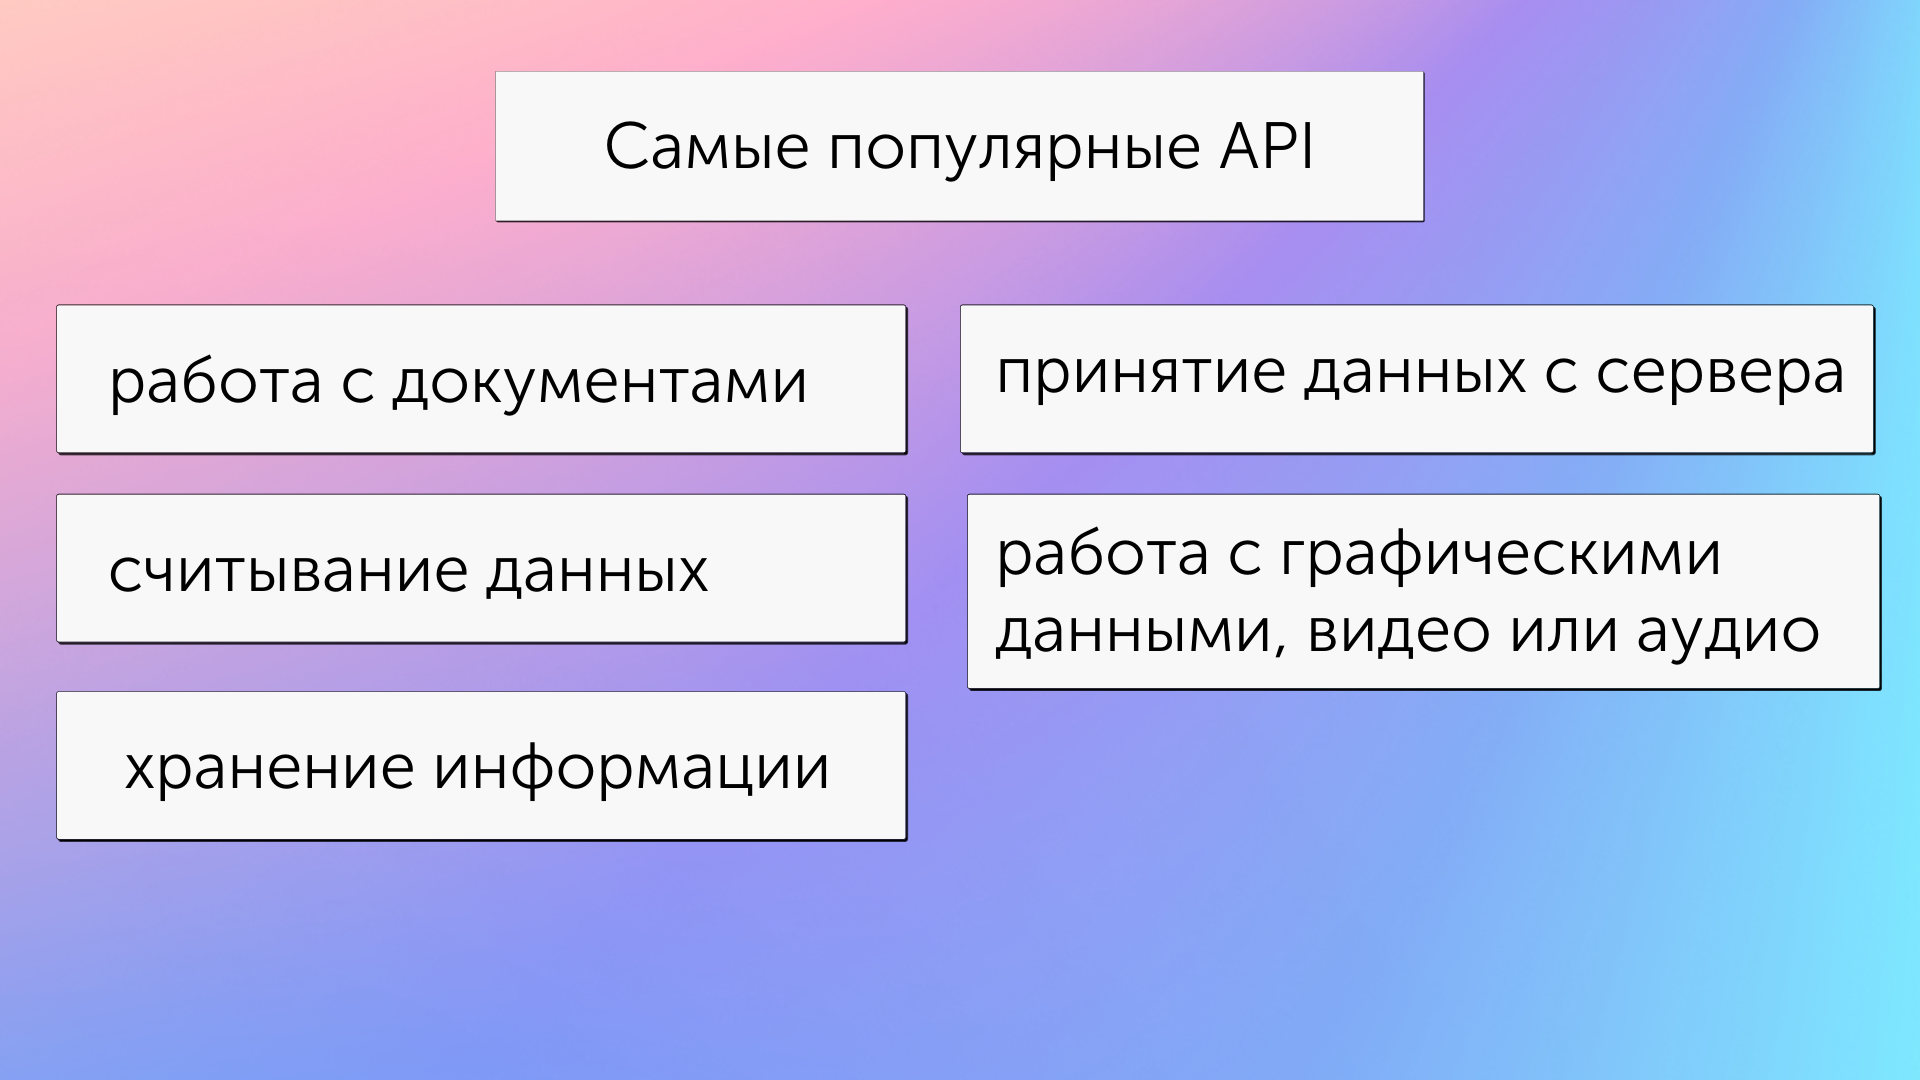 Основные и наиболее популярные категории API